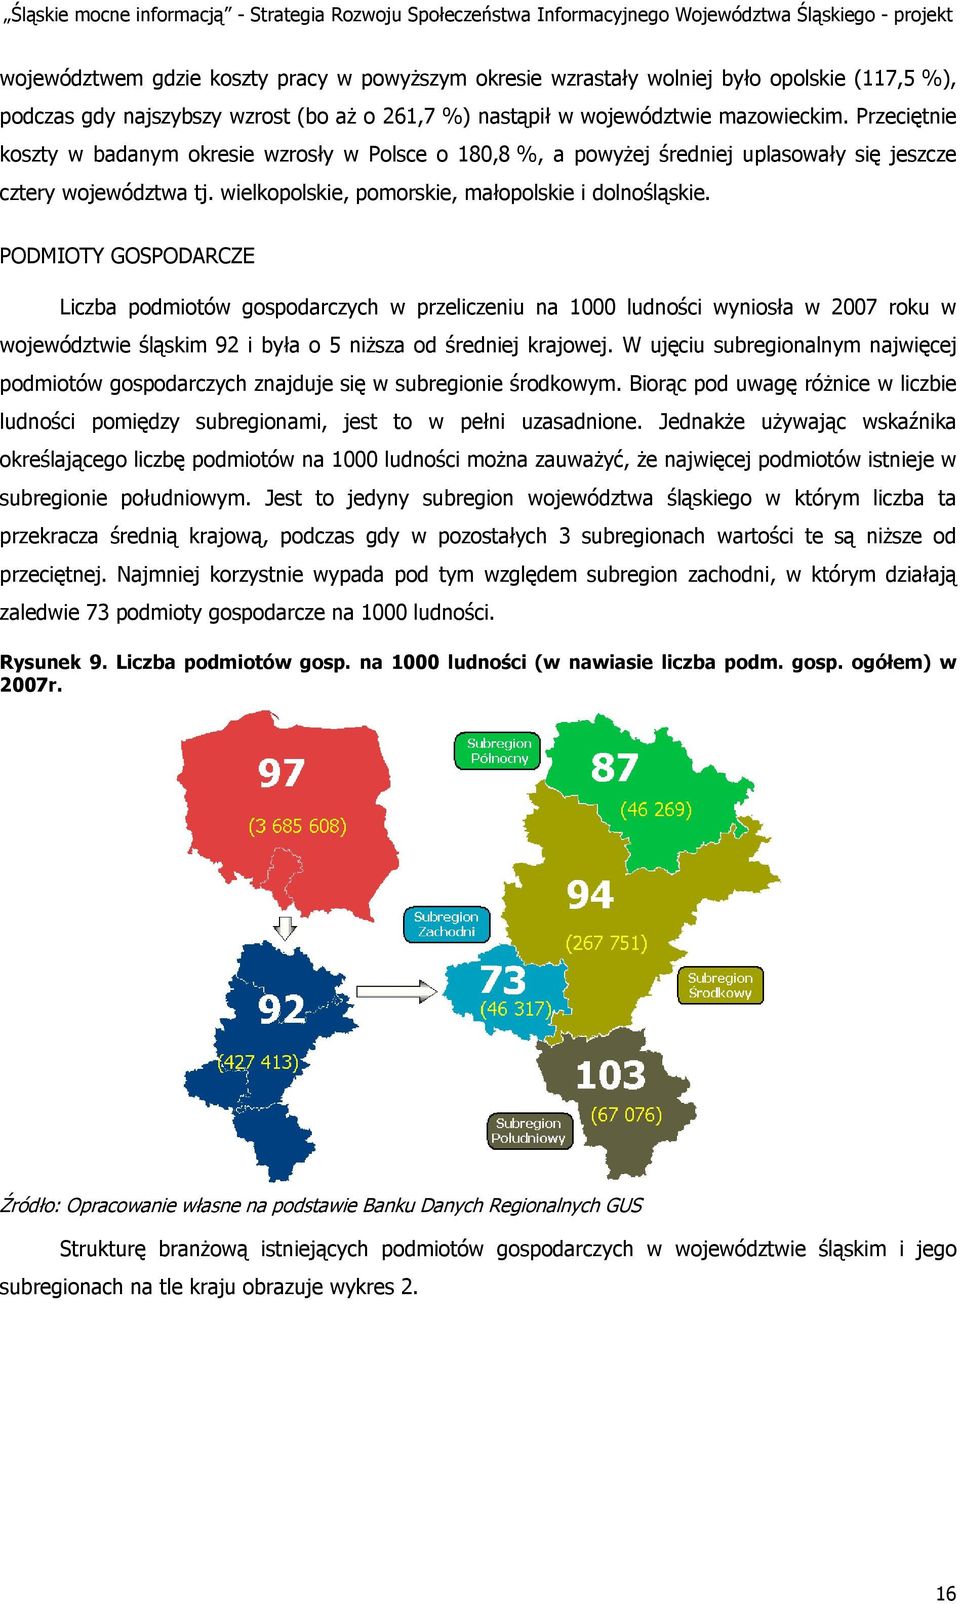 PODMIOTY GOSPODARCZE Liczba podmiotów gospodarczych w przeliczeniu na 1000 ludności wyniosła w 2007 roku w województwie śląskim 92 i była o 5 niższa od średniej krajowej.